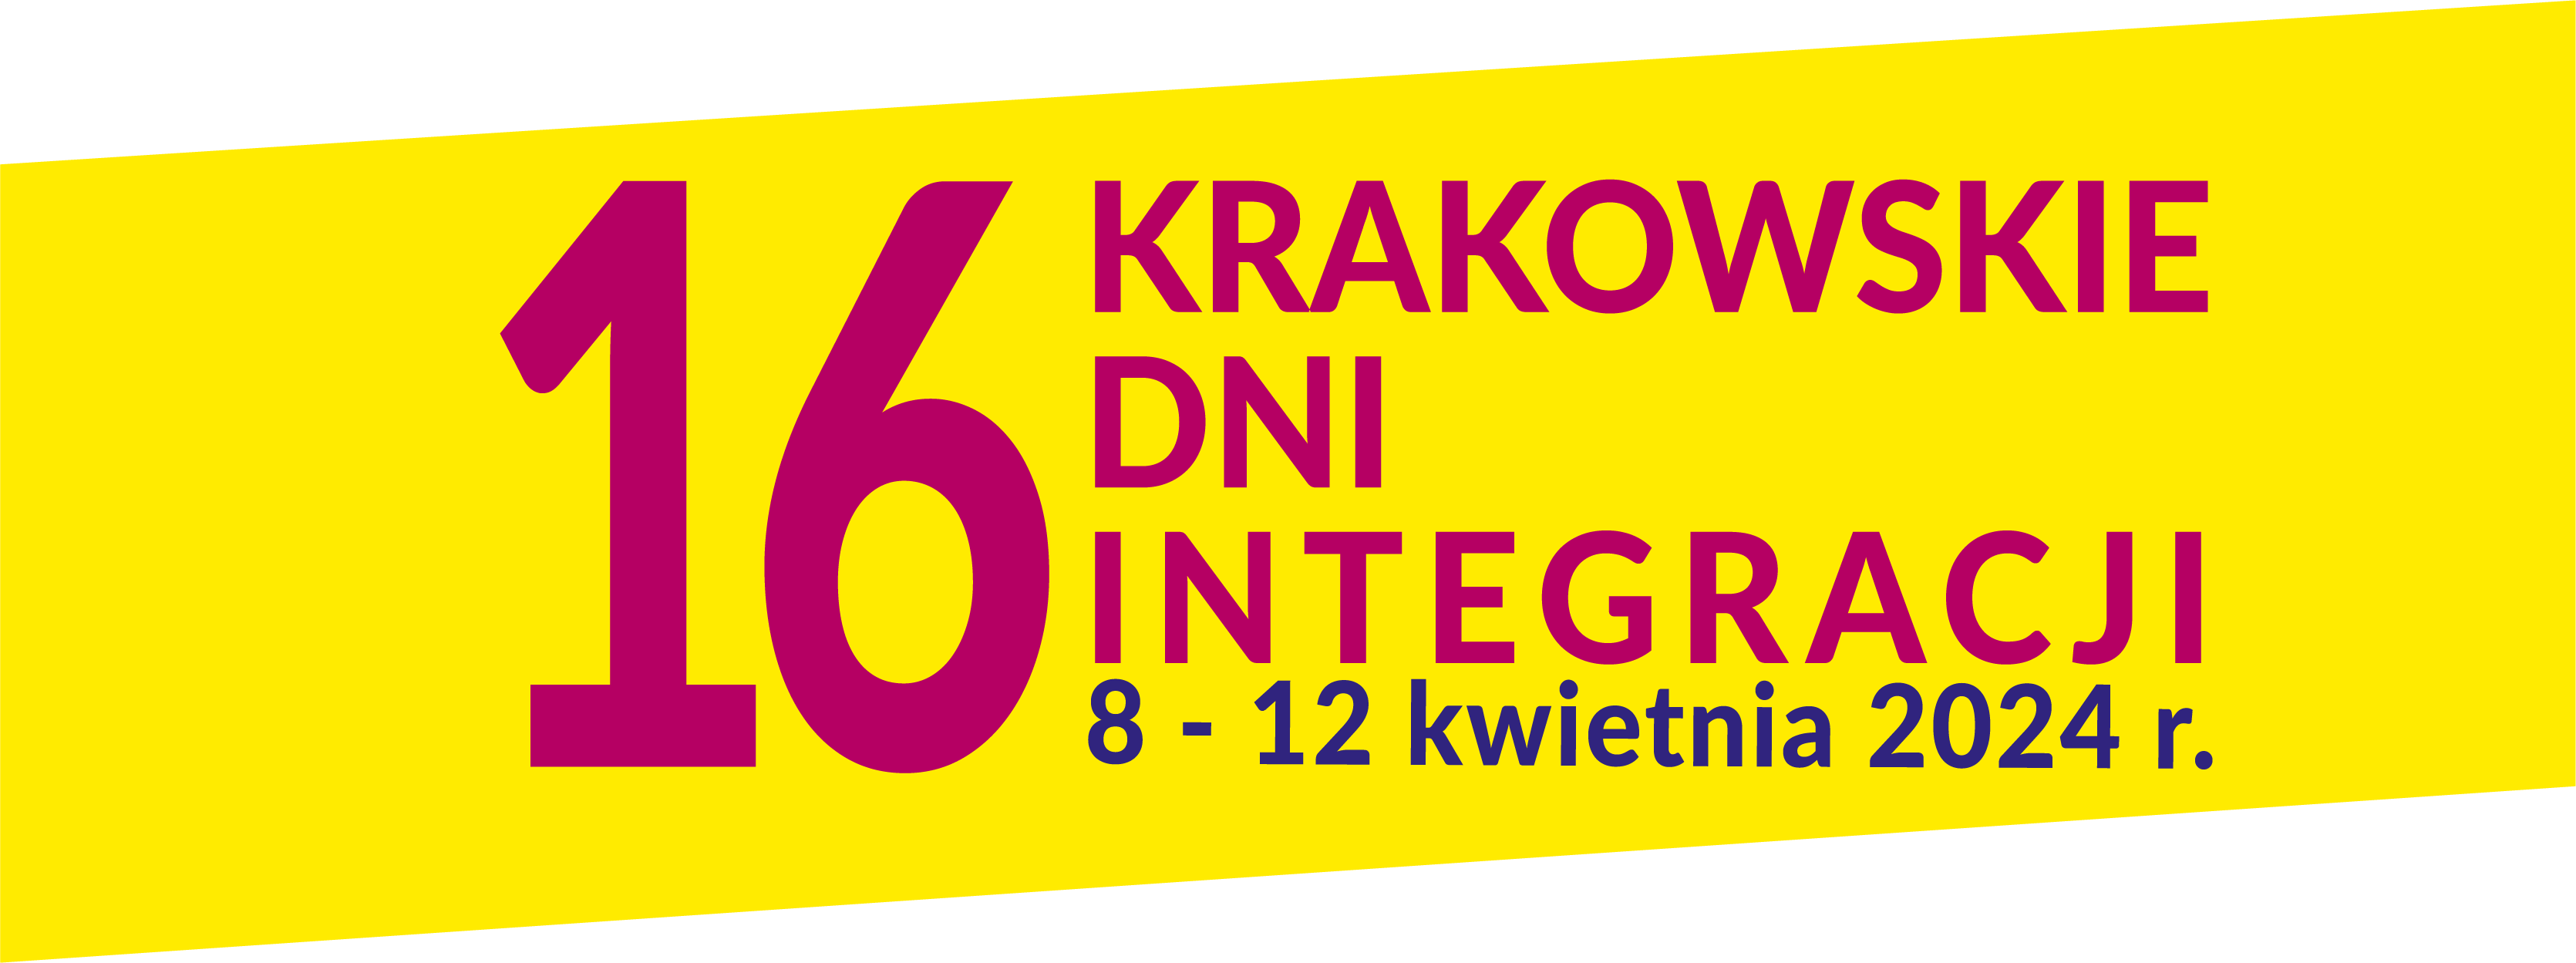 XVI Krakowskie Dni Integracji